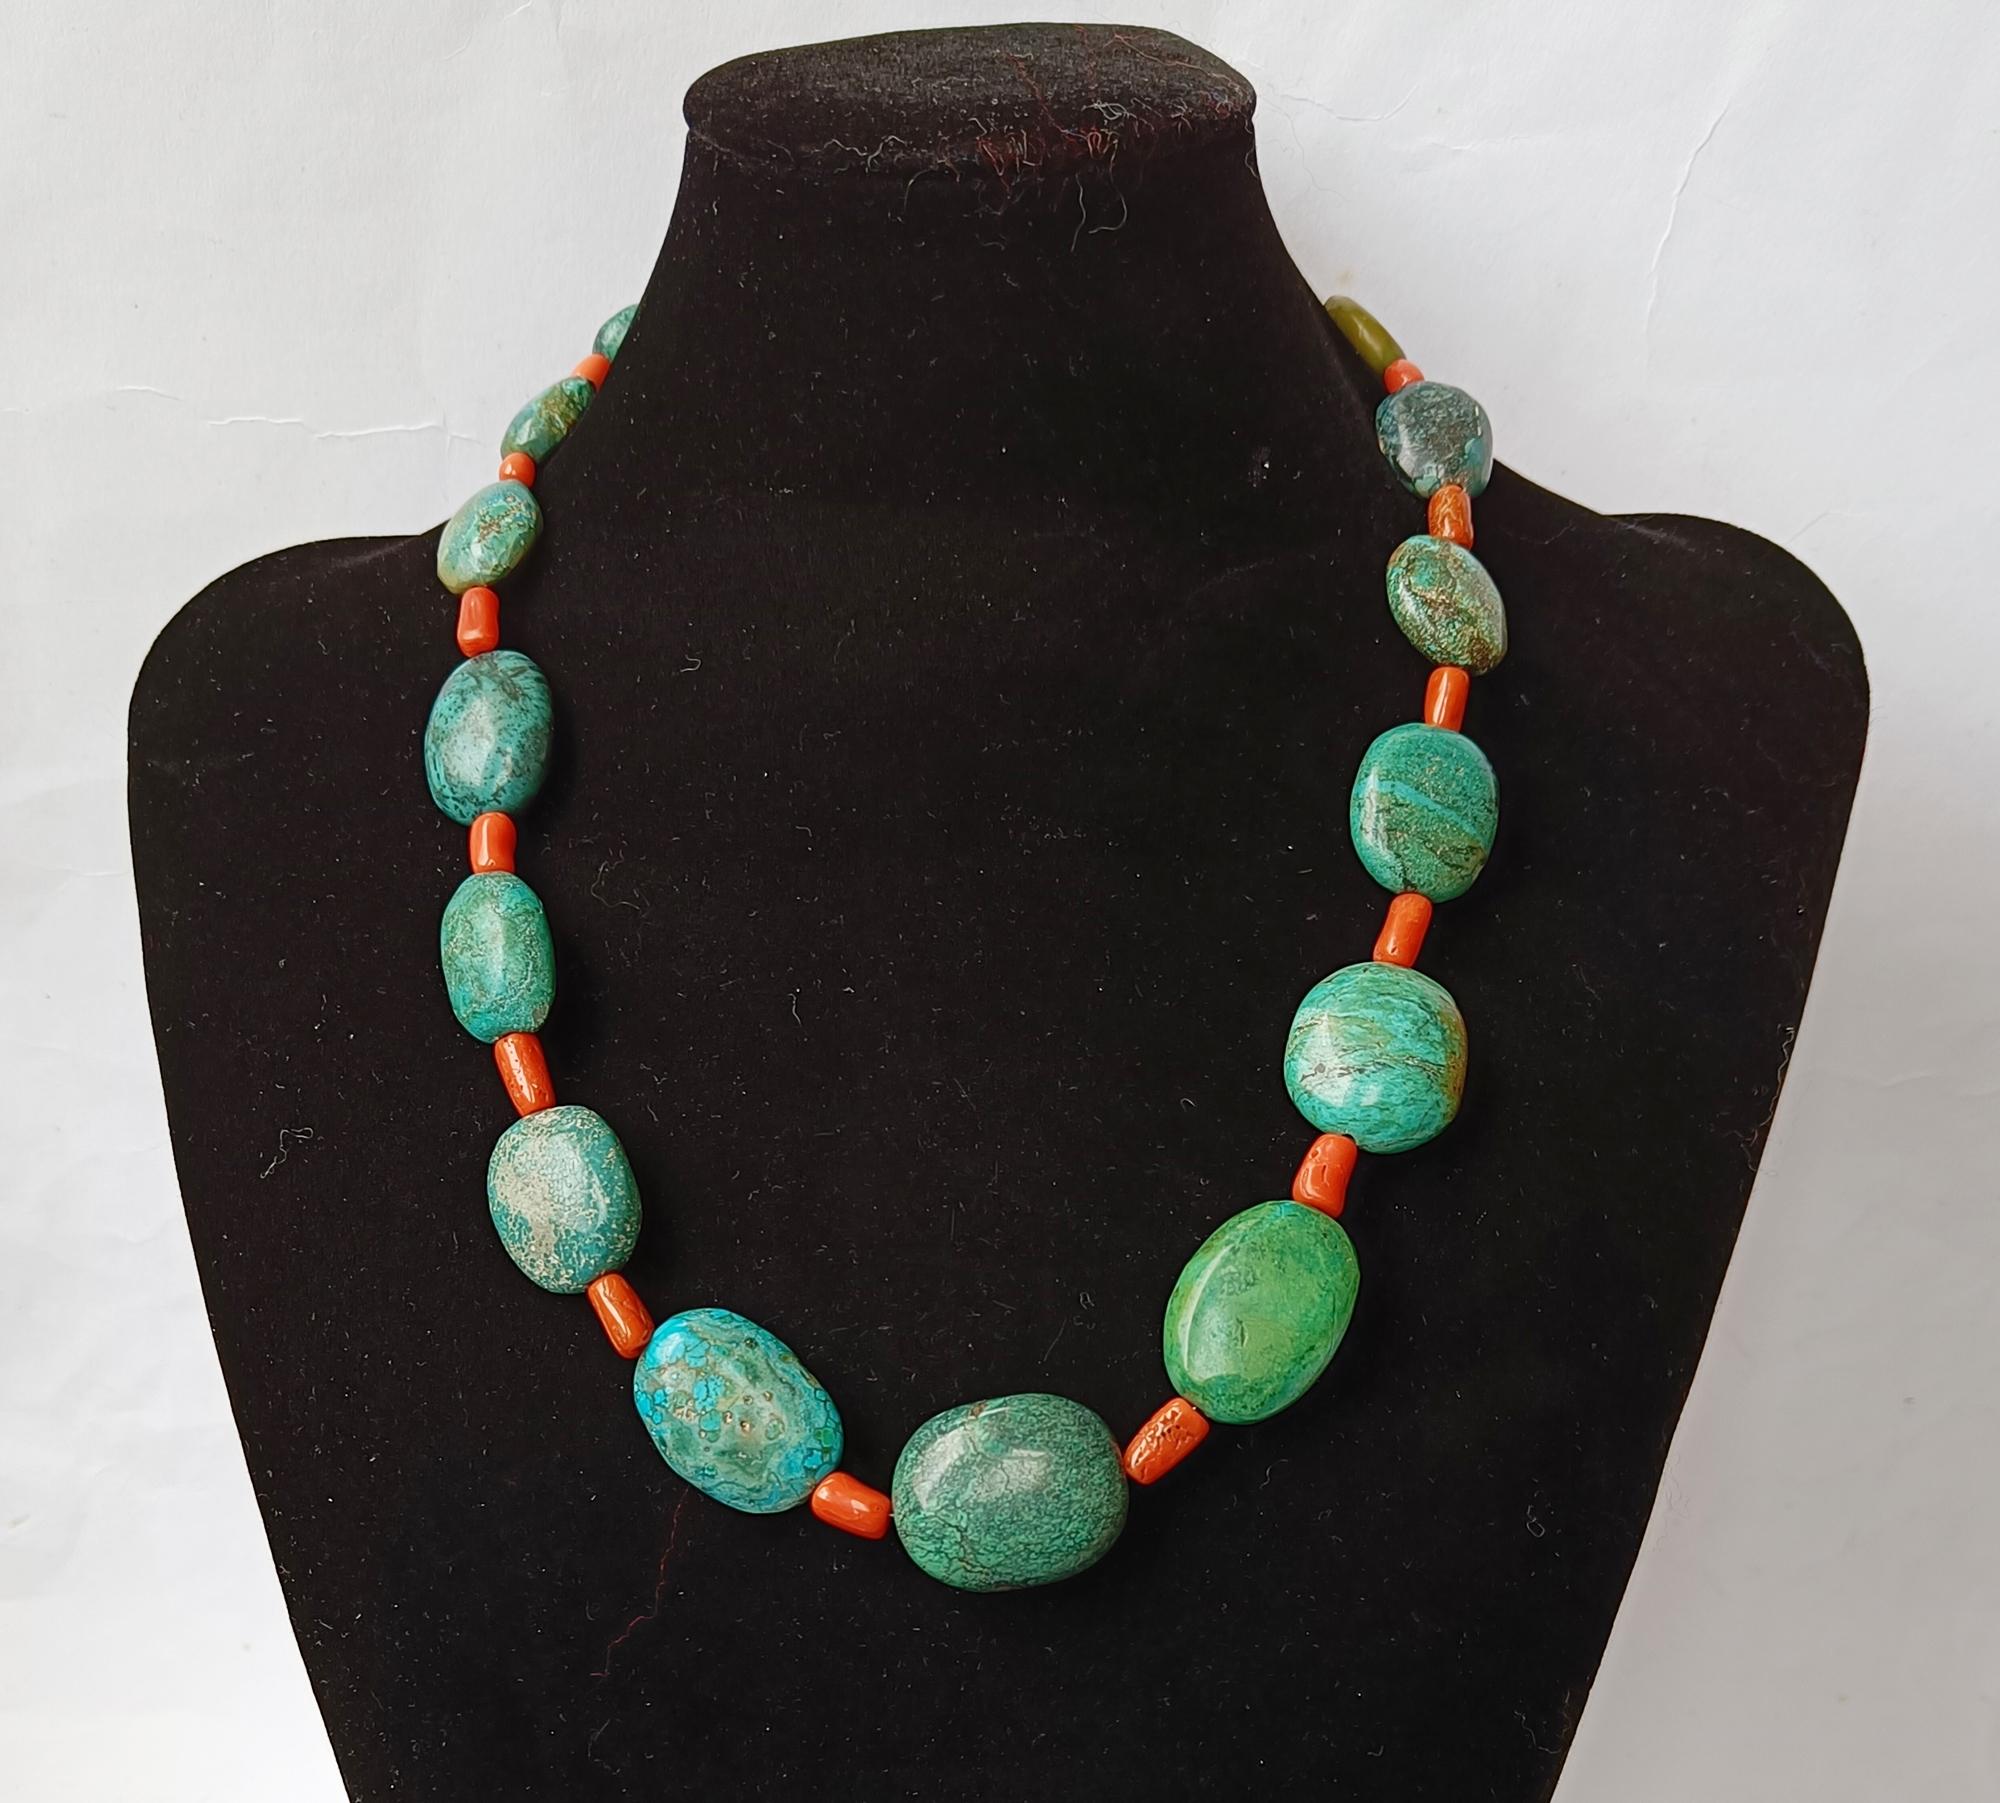 Vintage Ethnique Himalaya Turquoise Corail  Collier

Un magnifique collier de grosses perles de turquoise tibétaine
parsemé de perles de corail rouge naturel avec fermoir en argent
Période 2e moitié du 20e siècle  

 